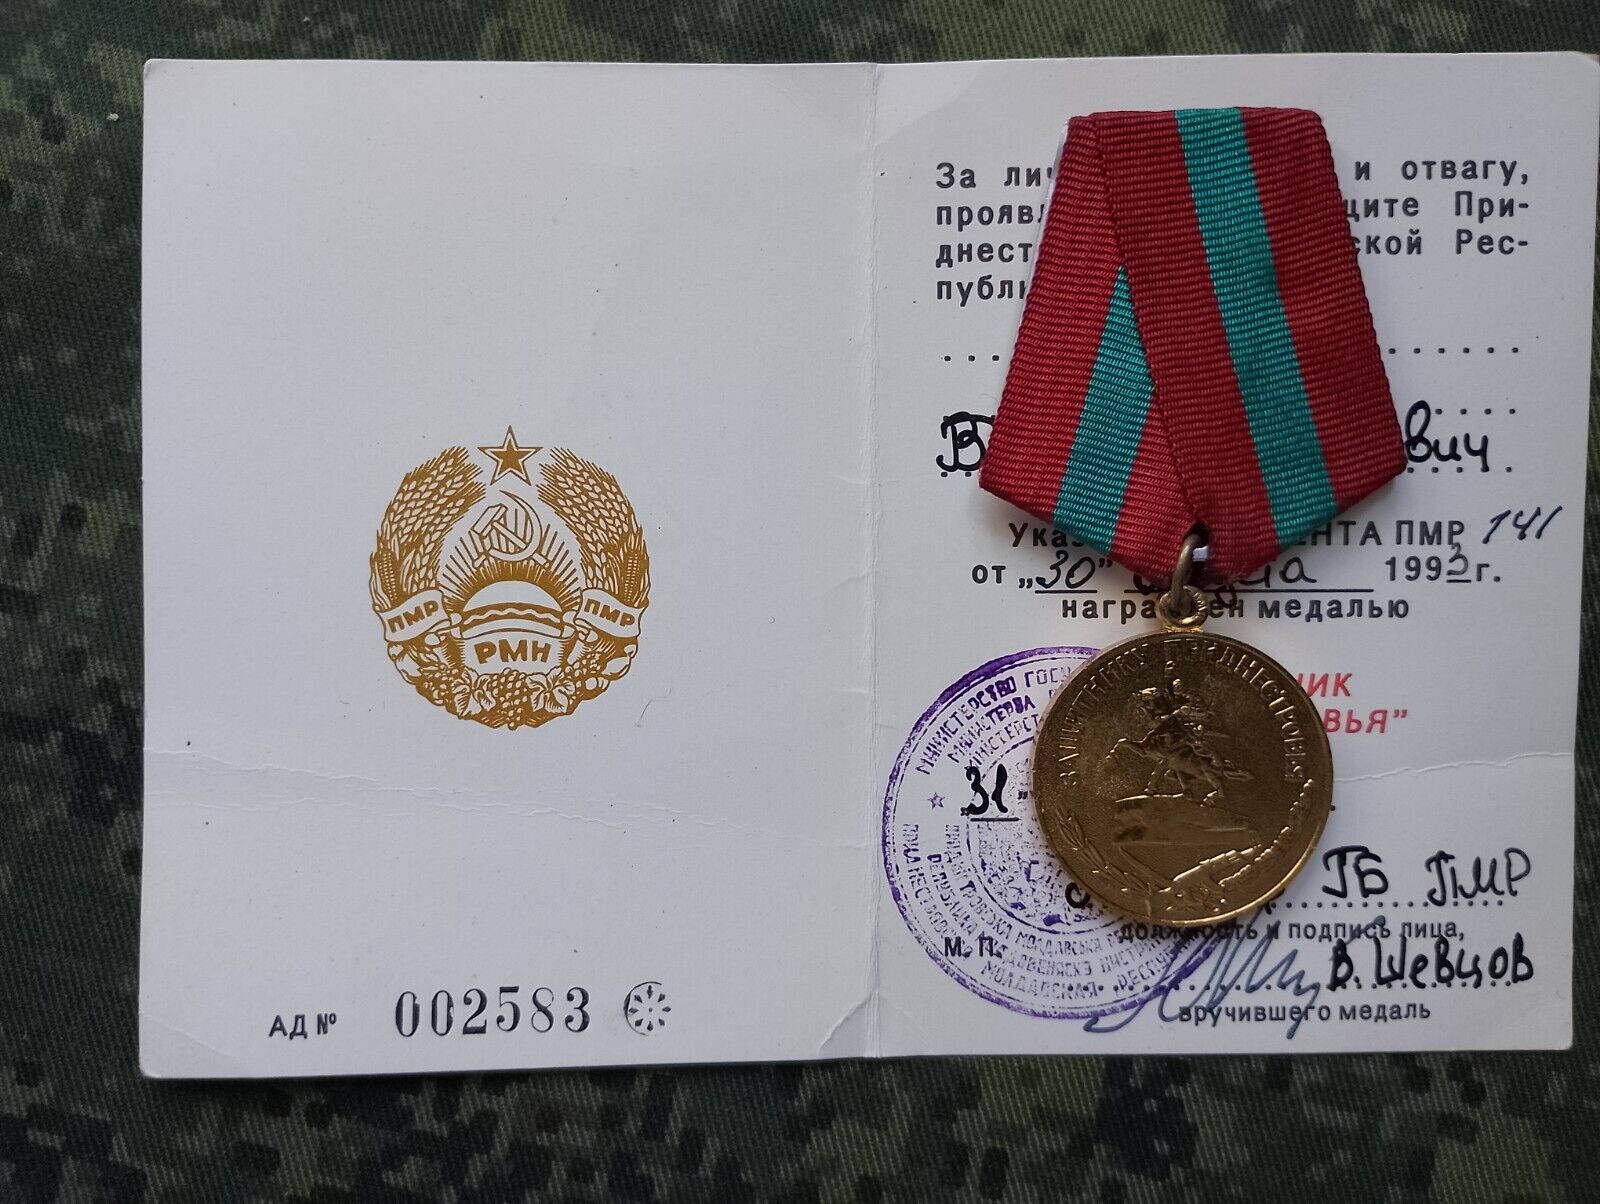 1993, Rare Transnistrian medal, state award, Medal Defender of Transnistria.